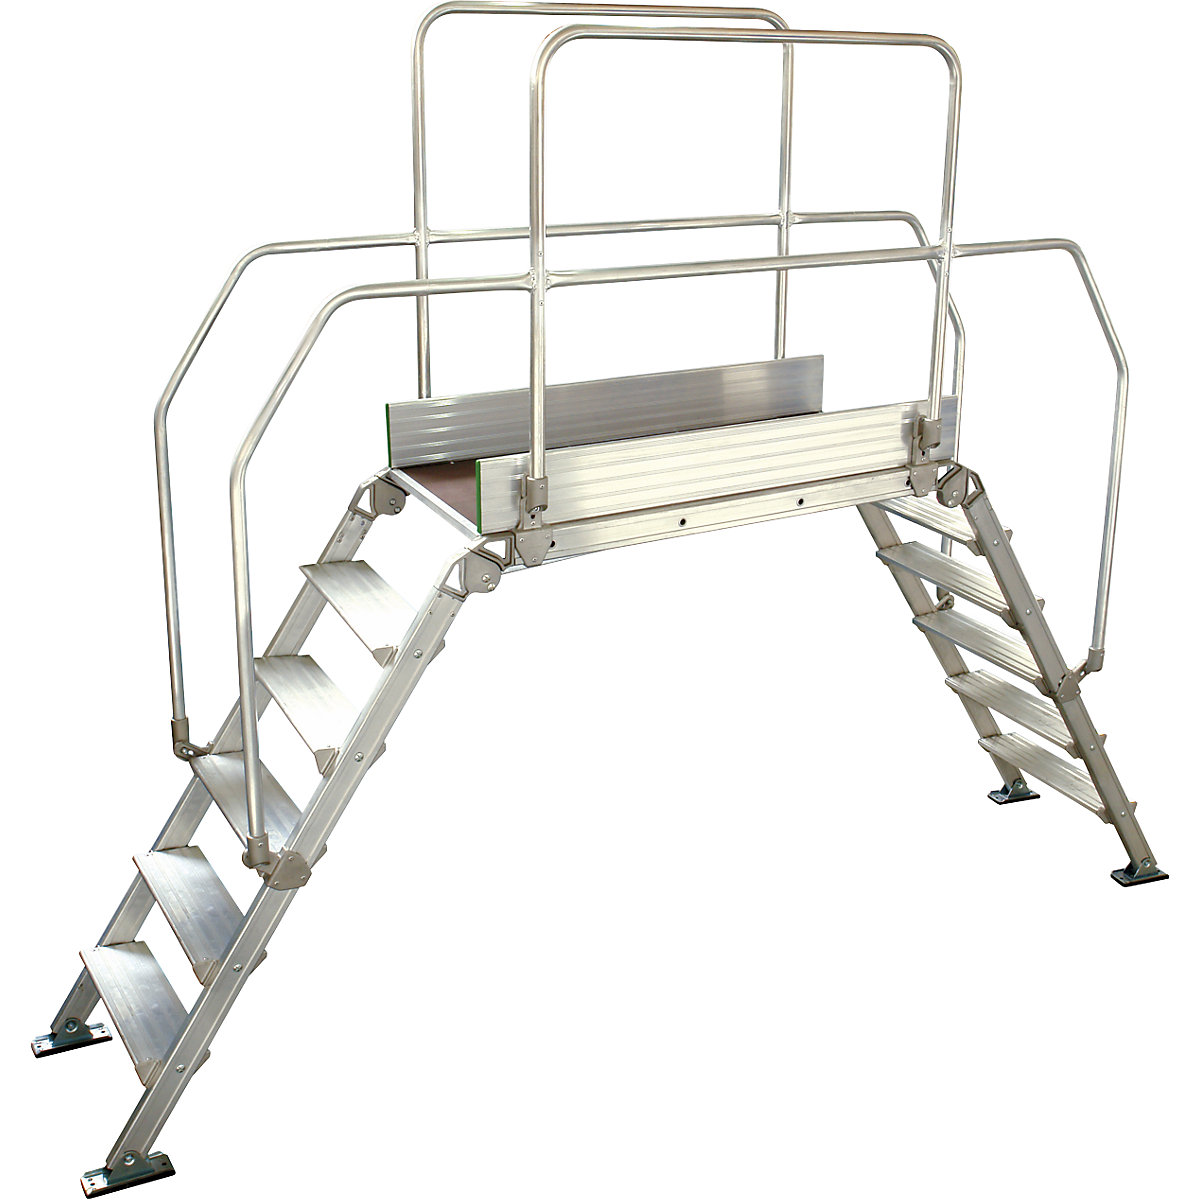 Aluminijasta premostitvena lestev, skupna obremenitev 200 kg, 6 stopnic, podest 1200 x 530 mm